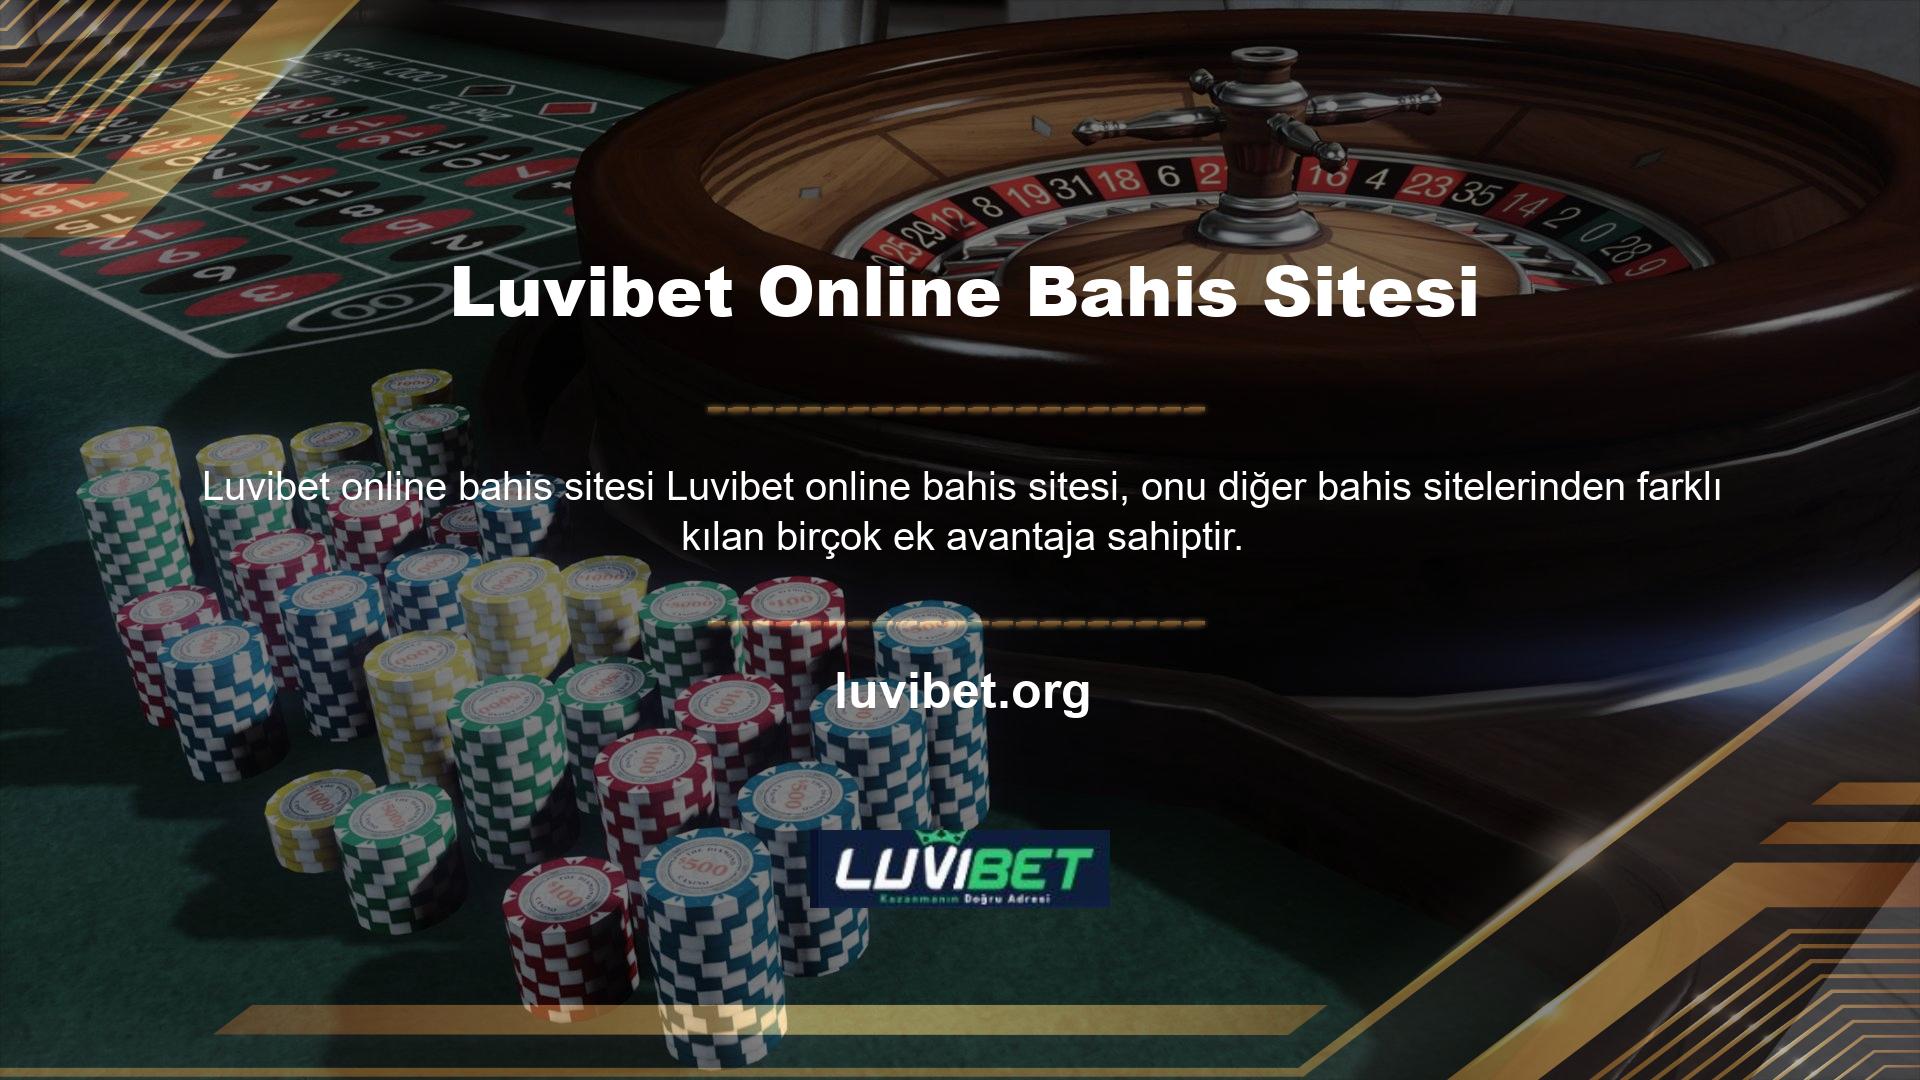 Luvibet bahis sitesi, kullanıcılarına Luvibet oyunlarını oynamak için tüm hizmetleri sunmaktadır